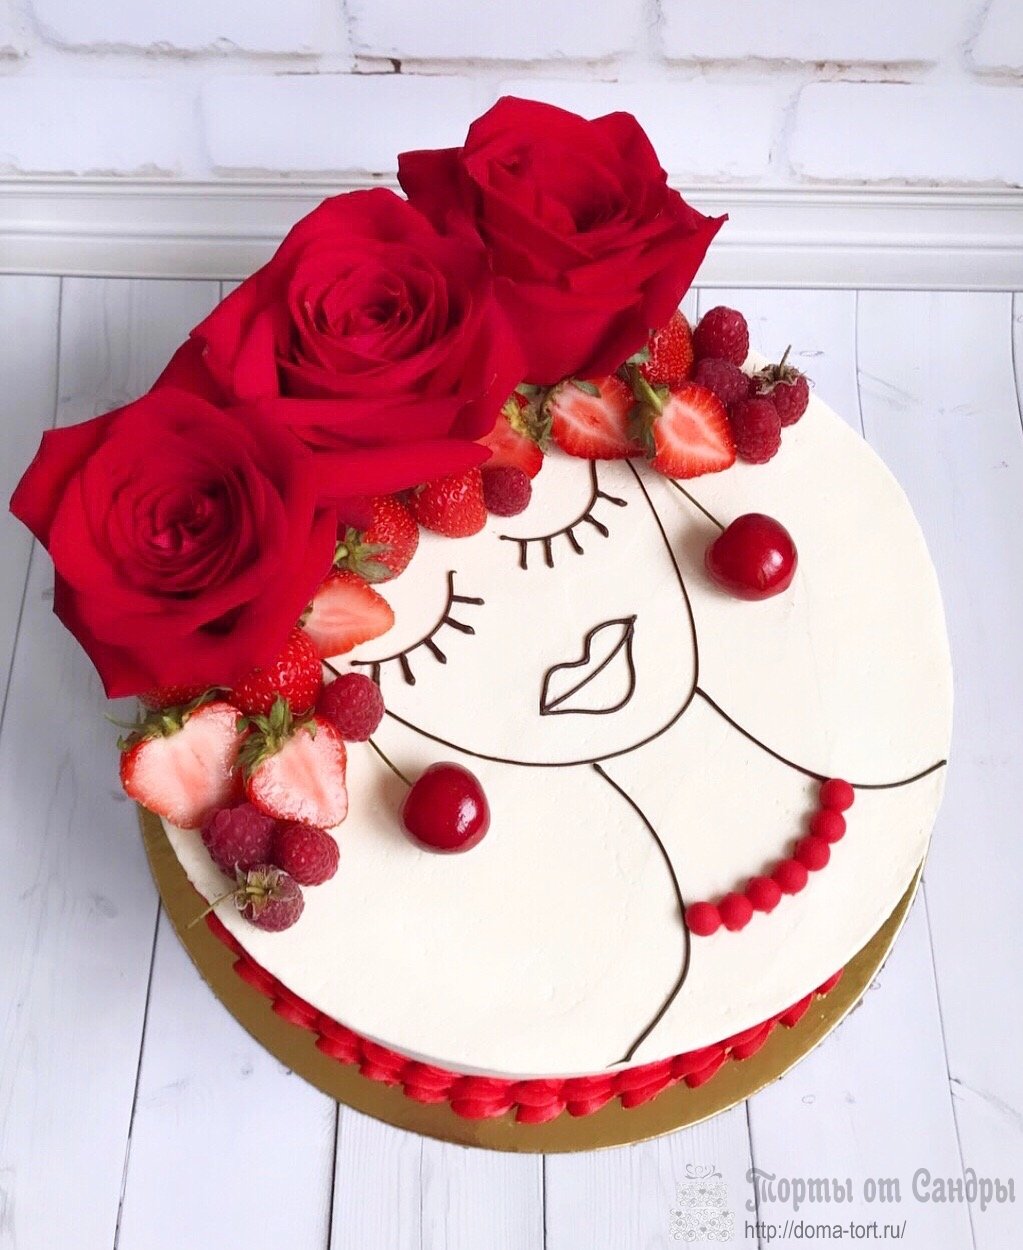 Торт - Портрет из ягод и цветов